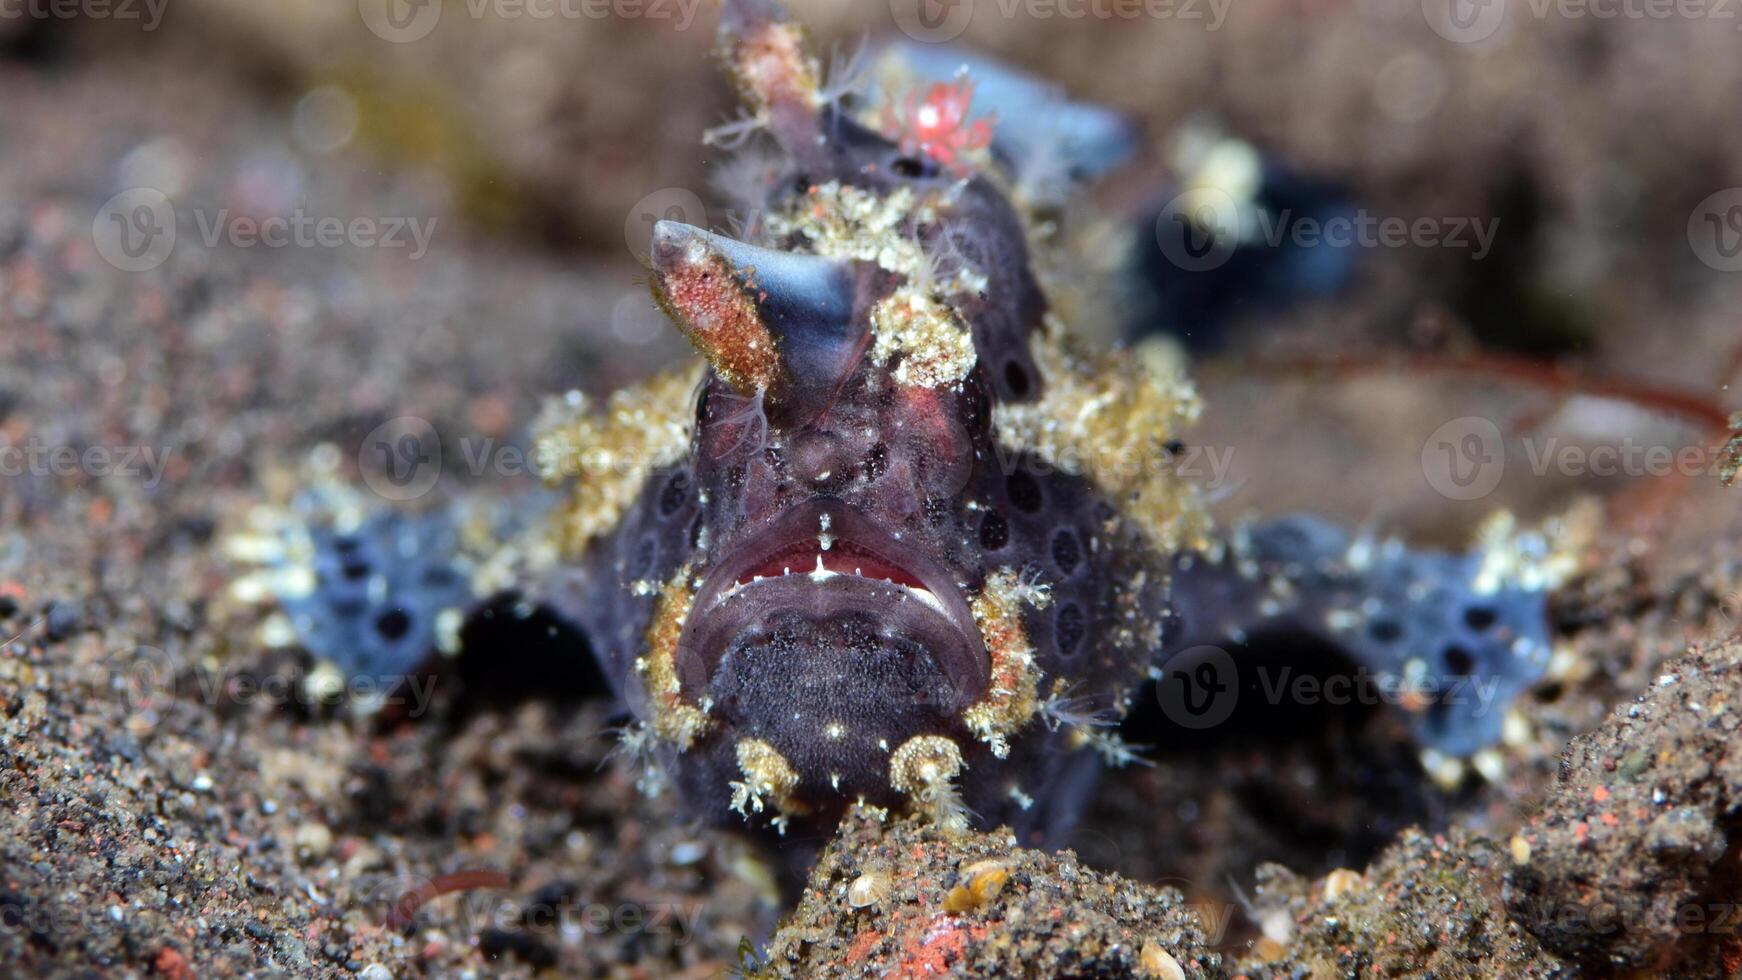 Anglerfisch Antenne. tolle unter Wasser Welt, Frosch Fisch Marine Kreatur foto